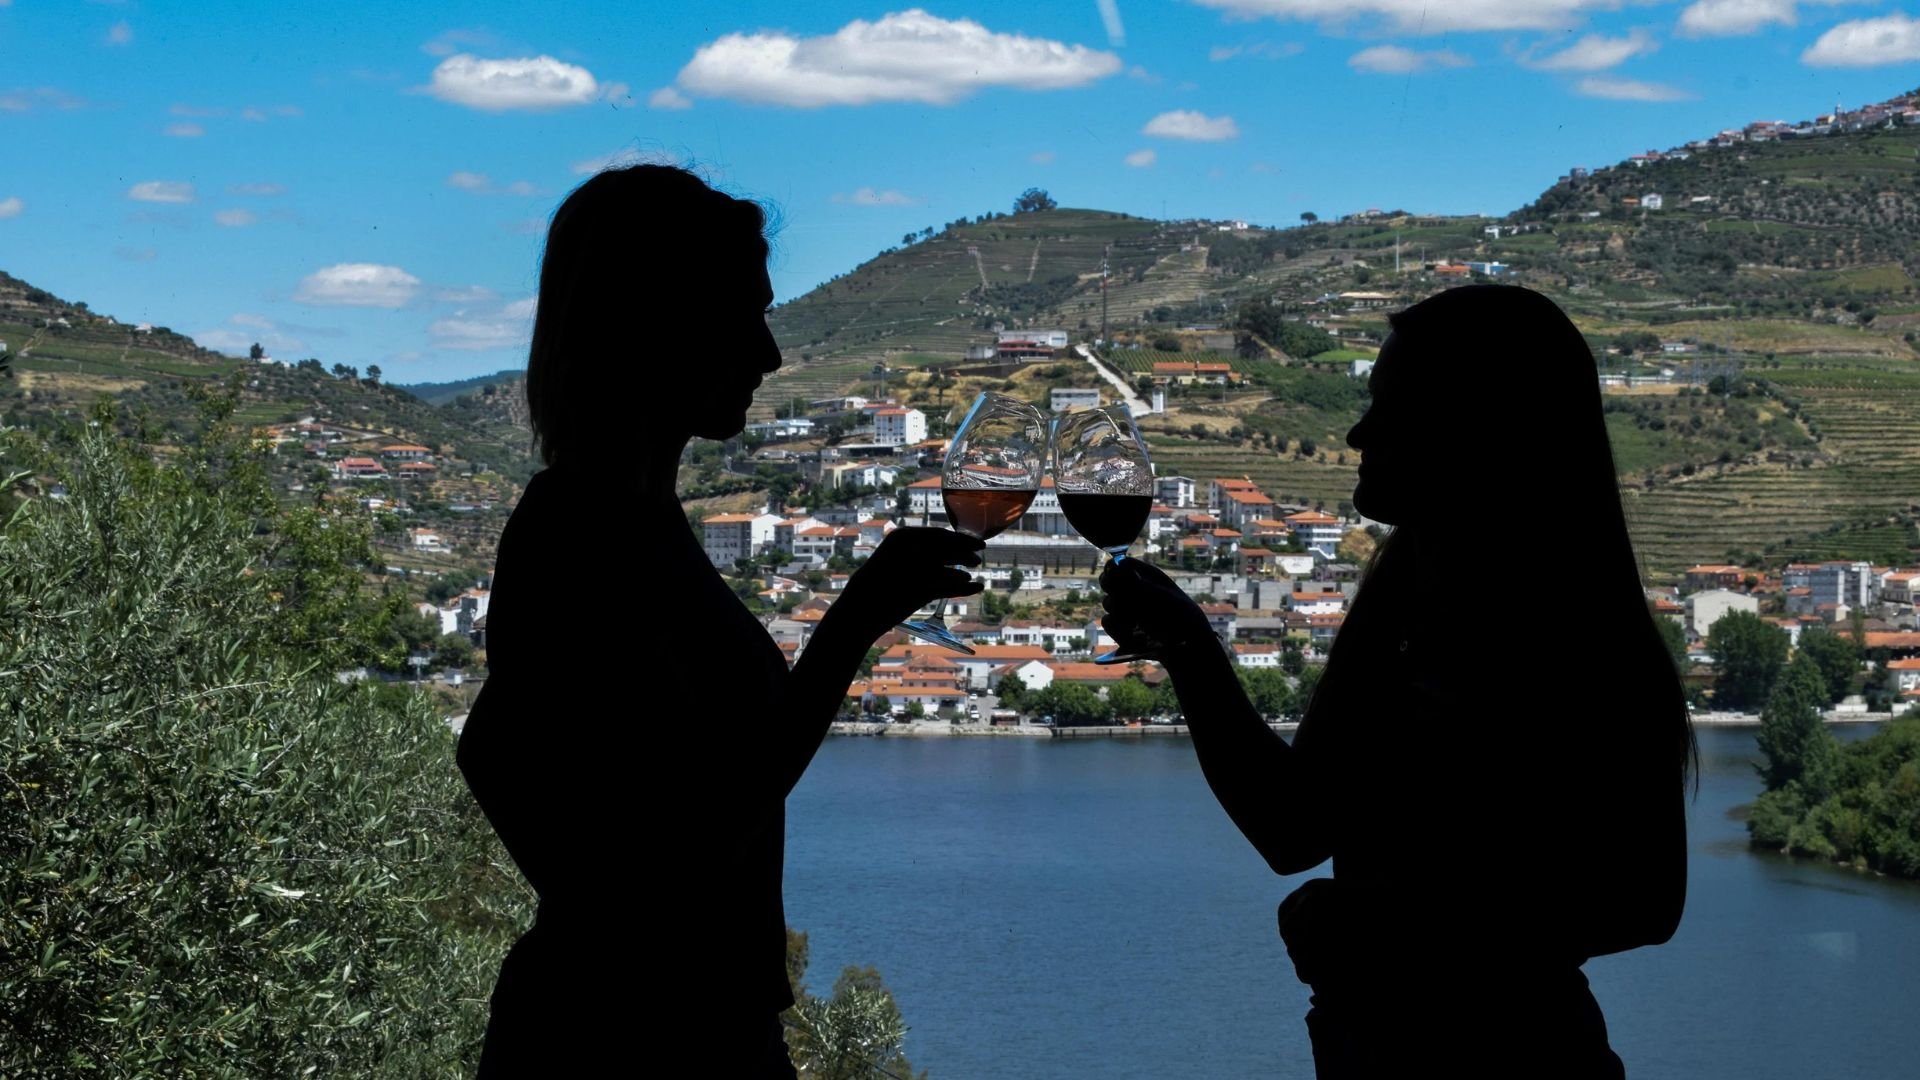 Adventuring in Douro Valley: Top Outdoor Activities to Try